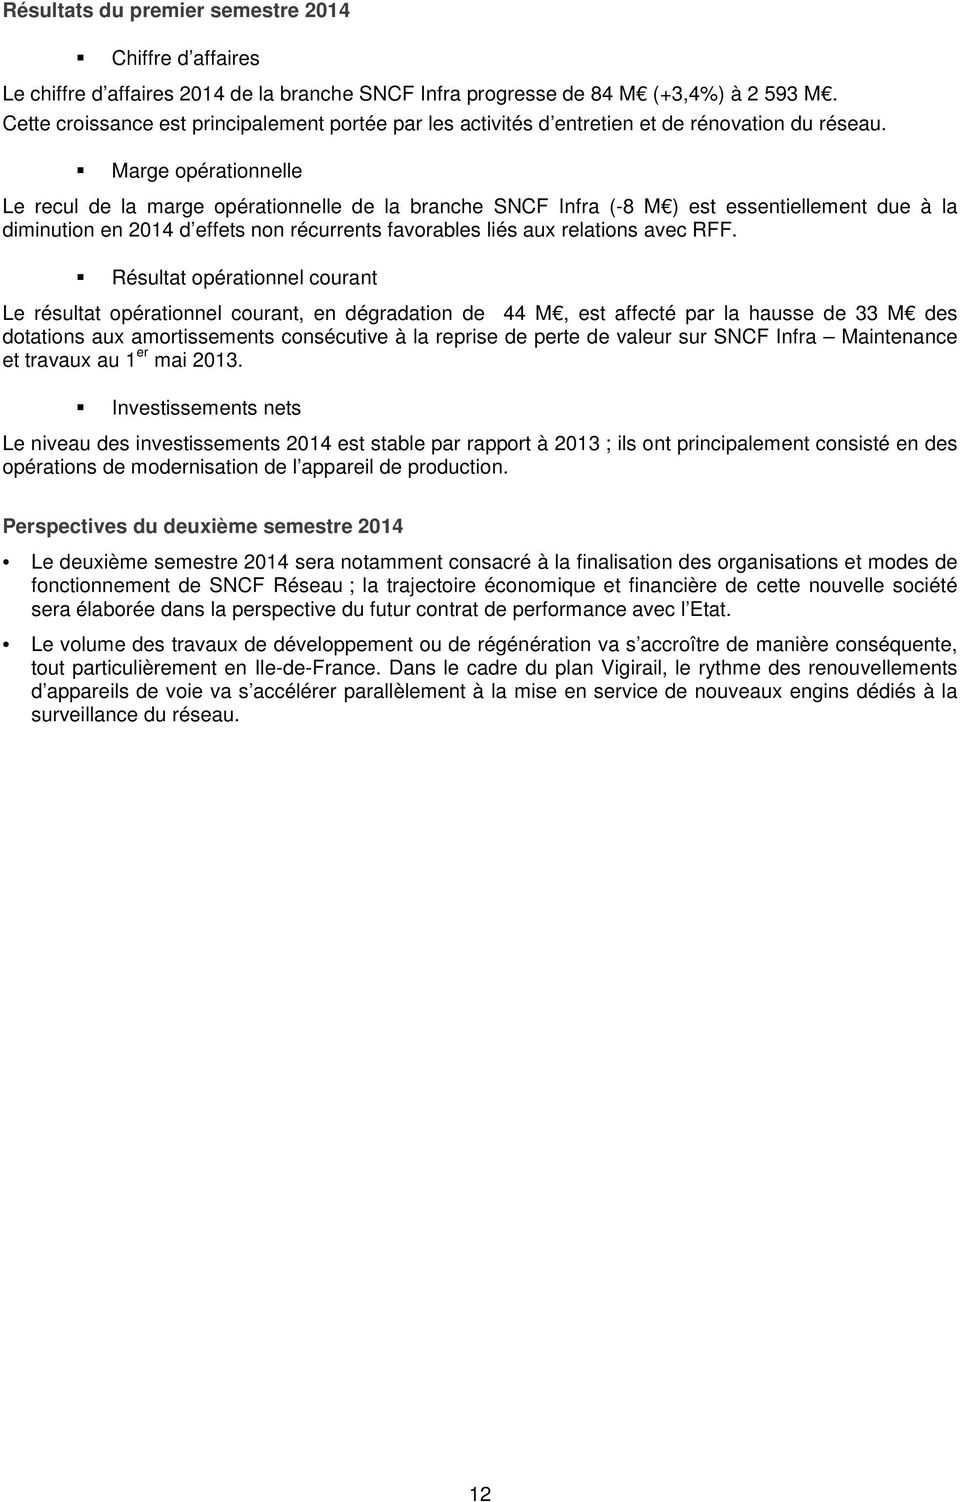 Marge opérationnelle Le recul de la marge opérationnelle de la branche SNCF Infra (-8 M ) est essentiellement due à la diminution en 2014 d effets non récurrents favorables liés aux relations avec